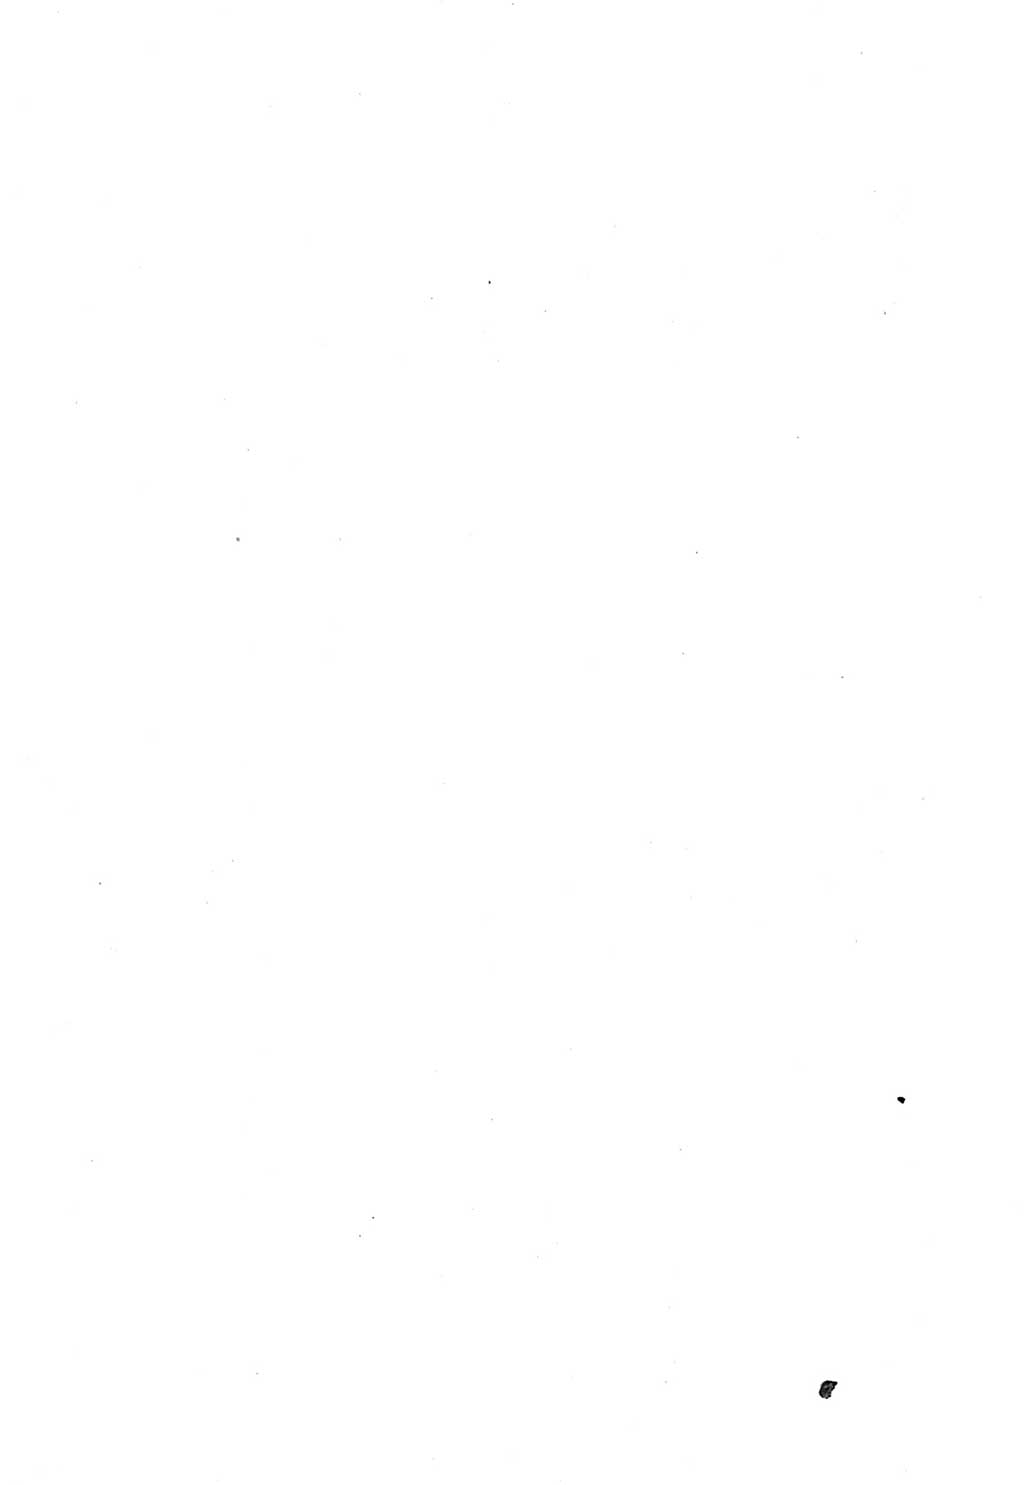 Strafgesetzbuch (StGB) und andere Strafgesetze [Deutsche Demokratische Republik (DDR)] 1957, Seite 2 (Einl. StGB Strafges. DDR 1957, S. 2)